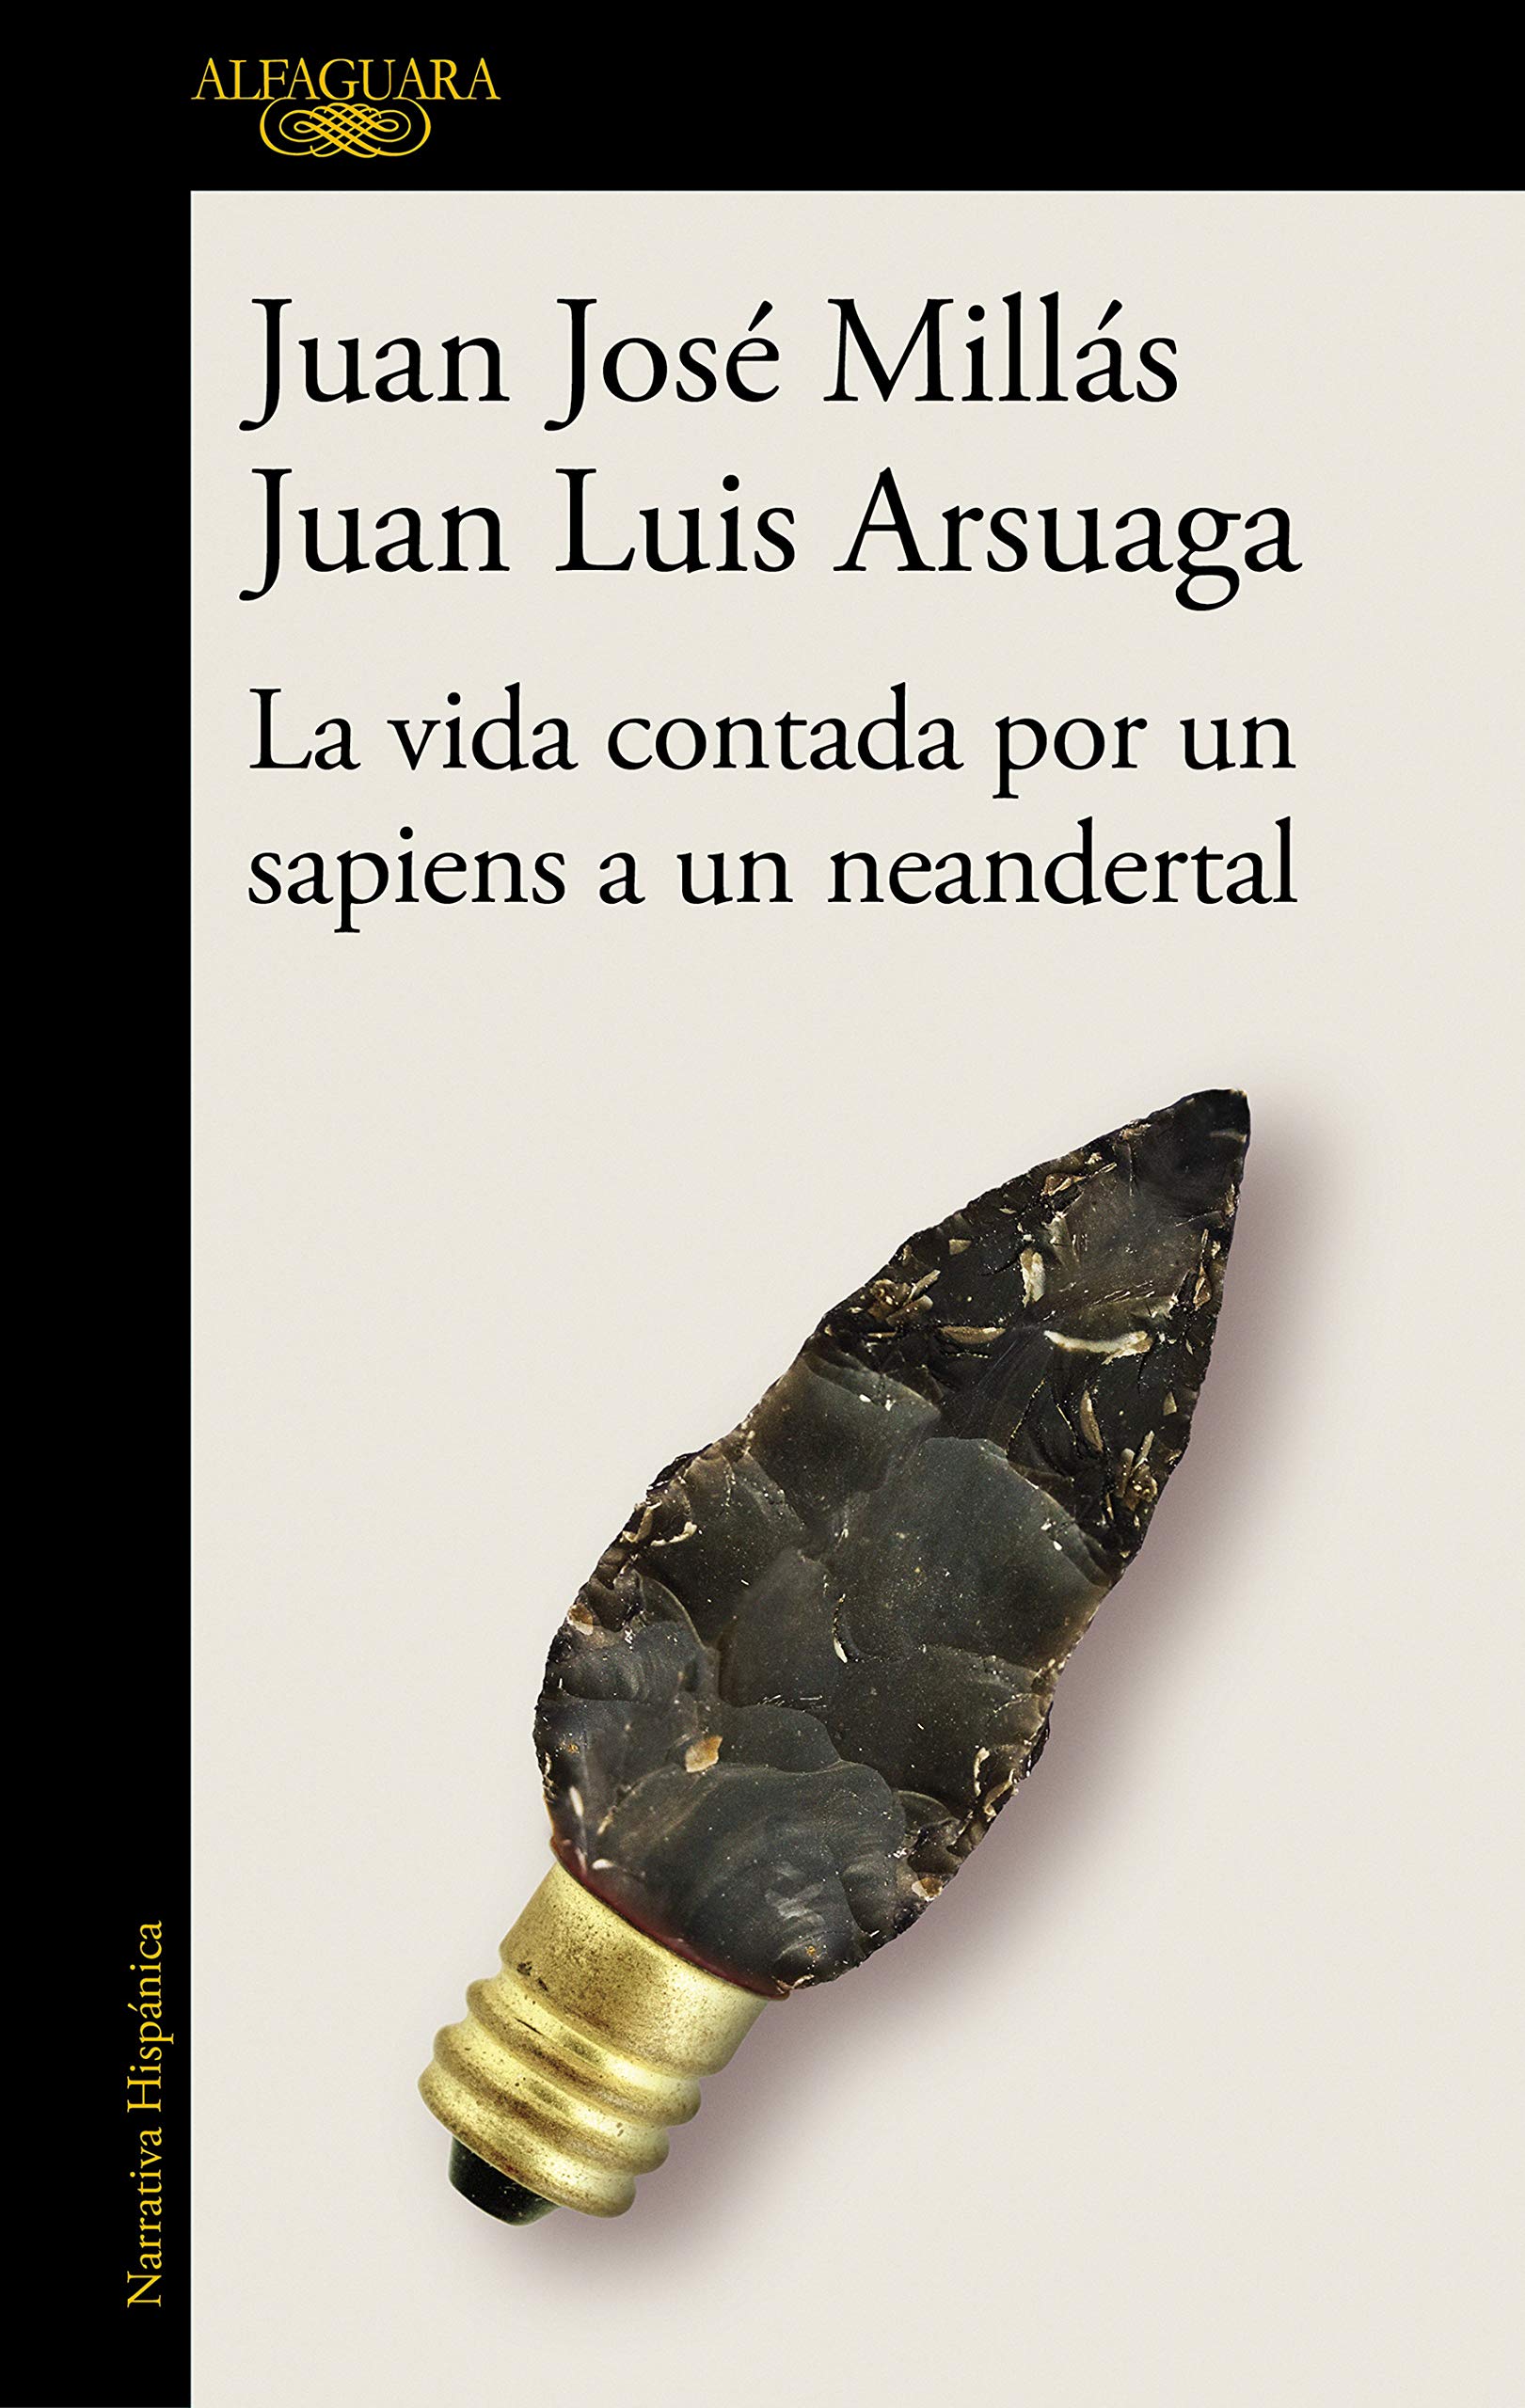 JUAN JOSÉ MILLÁS Y JUAN LUIS ARSUAGA presentan 'La vida contada por sapiens a un neandertal' (Alfaguara)